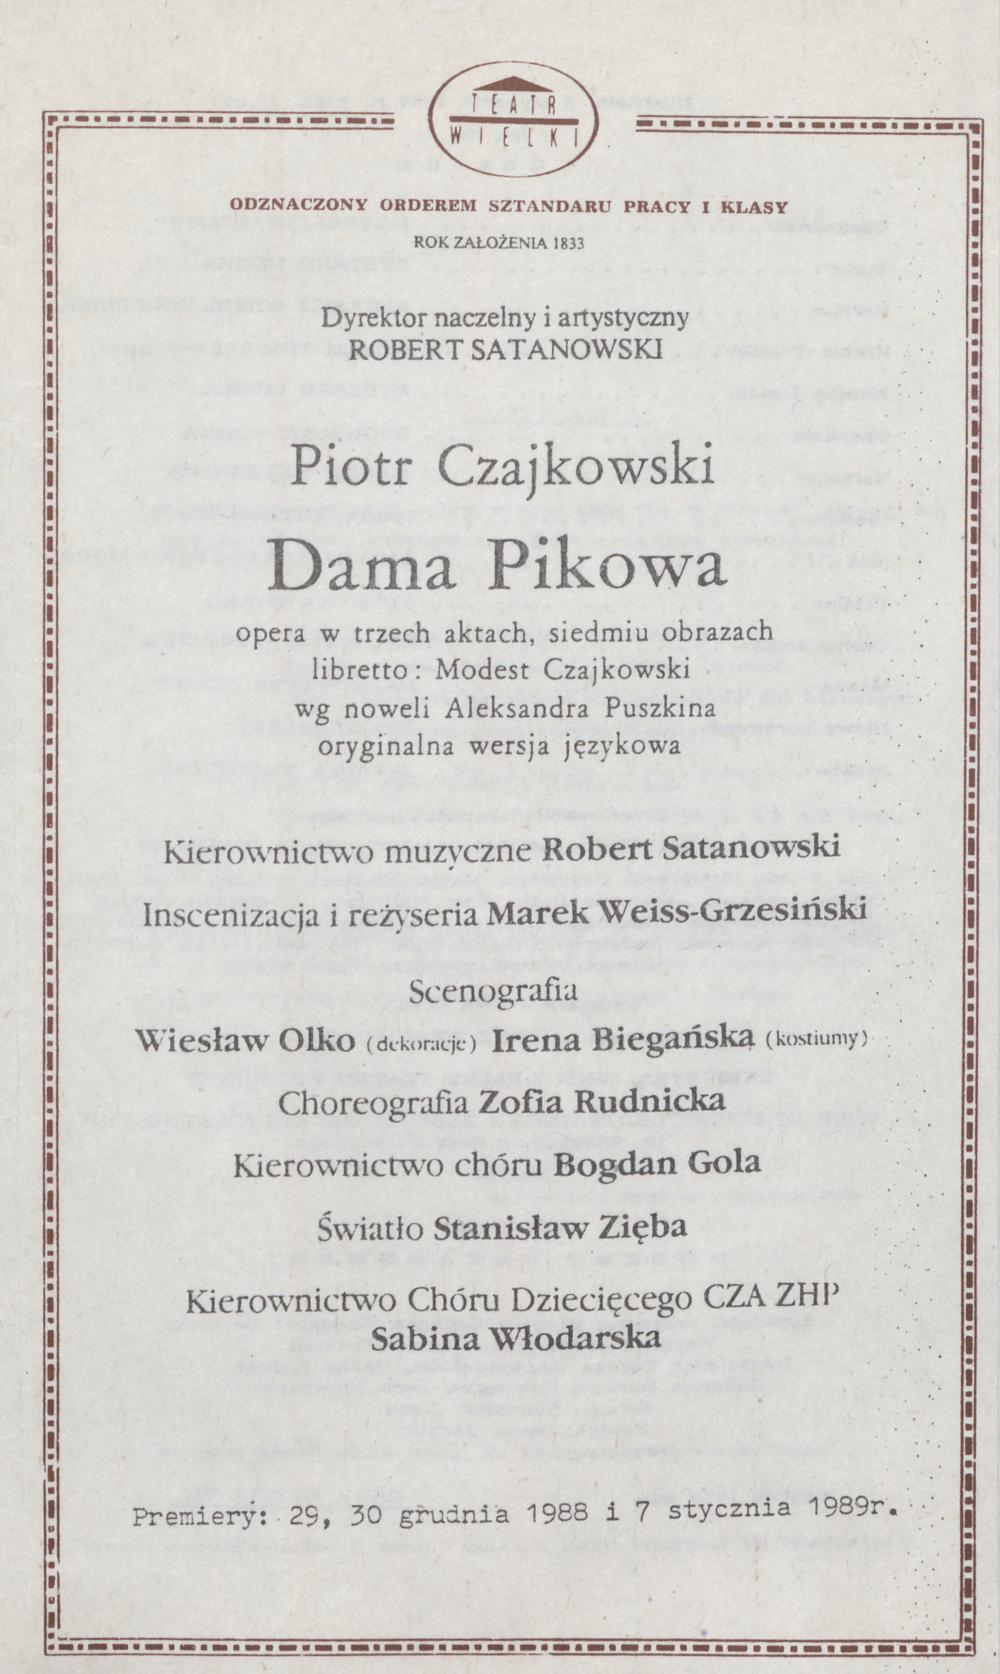 Wkładka obsadowa „Dama pikowa” Piotr Czajkowski 8-01-1989